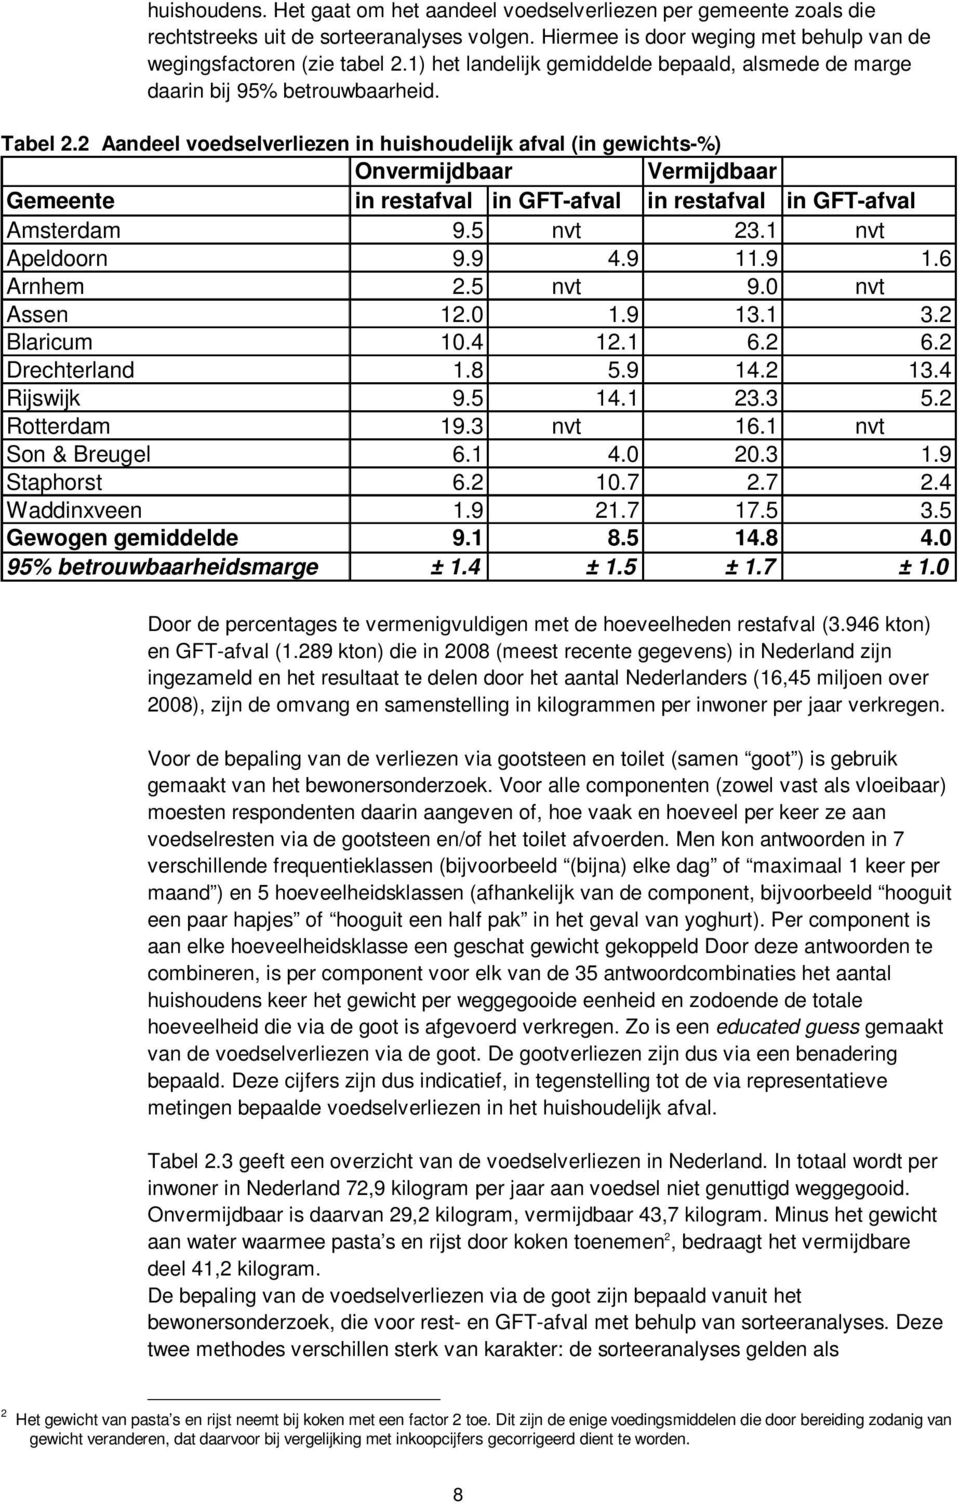 2 Aandeel voedselverliezen in huishoudelijk afval (in gewichts-%) Onvermijdbaar Vermijdbaar Gemeente in restafval in GFT-afval in restafval in GFT-afval Amsterdam 9.5 nvt 23.1 nvt Apeldoorn 9.9 4.